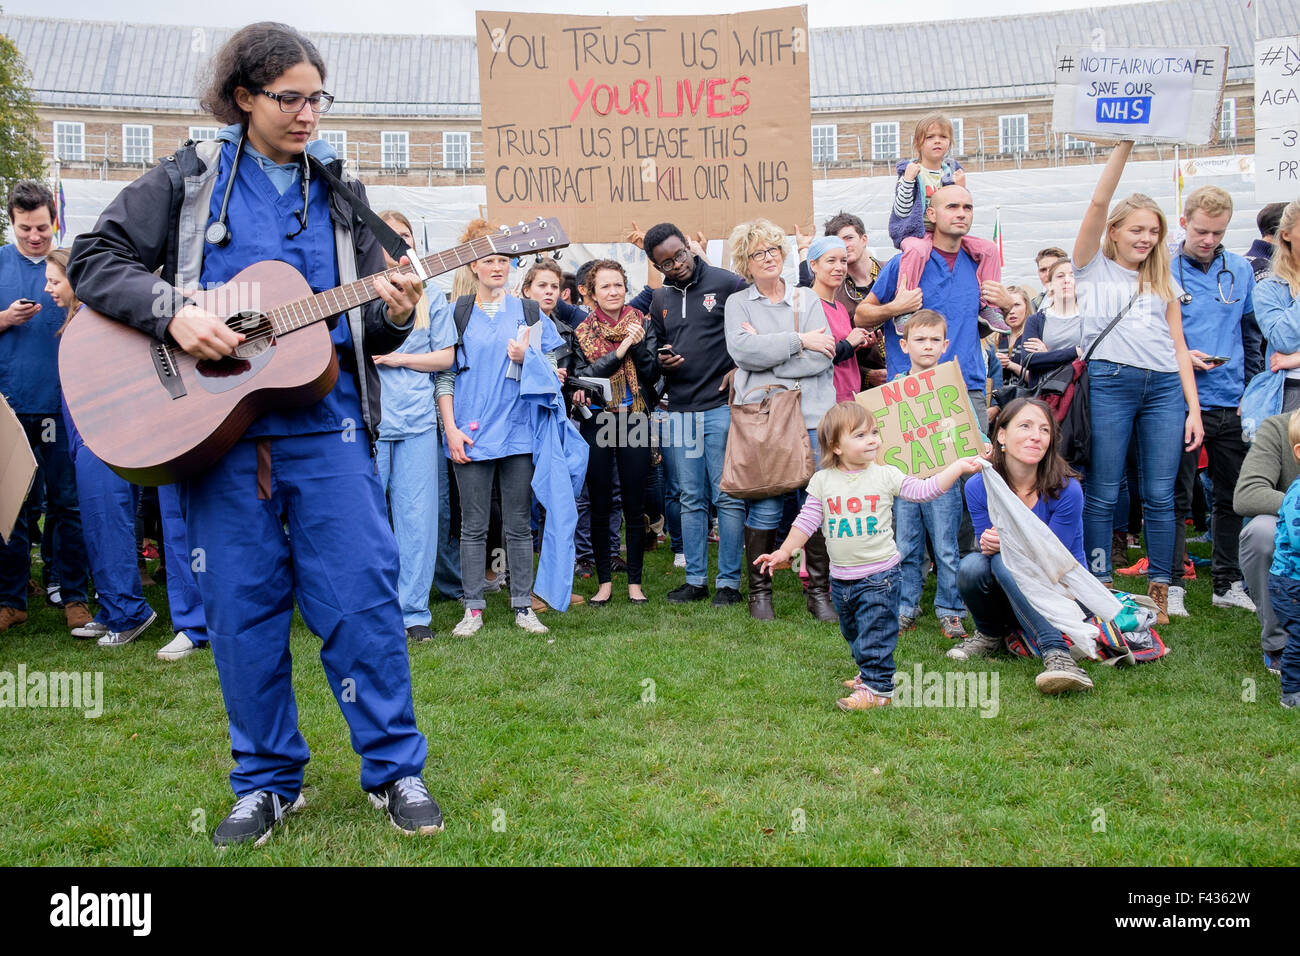 Bristol, UK, 10.10.2015. NHS-Mitarbeiter und Mitglieder der Öffentlichkeit sind abgebildet, wie sie gegen die neuen junior Arzt Kontrakte zu protestieren. Stockfoto